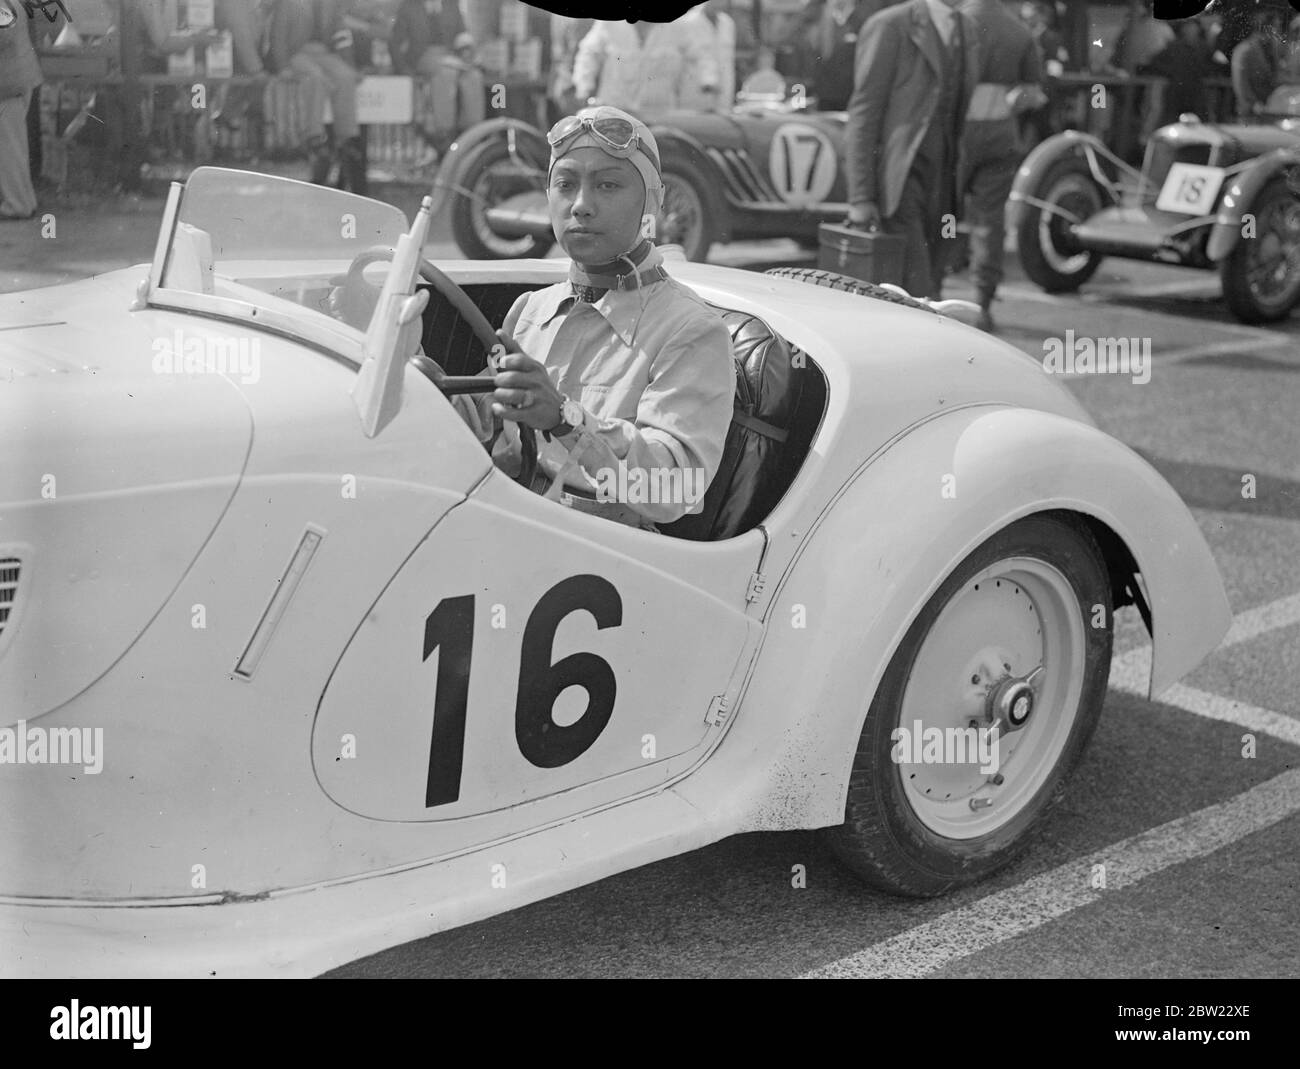 Prince Bura (Burabongse) la gara internazionale del Trofeo turistico del Royal Automobile Club si è tenuta a Donington Park, vicino a Derby, e copre le 312 miglia in quattro ore 35 minuti 27 secondi ad una velocità media di 68.7 miglia all'ora. Questa fu la prima volta che la gara si era svolta in Inghilterra dal 1928 al 1936. 4 settembre 1937. Foto Stock